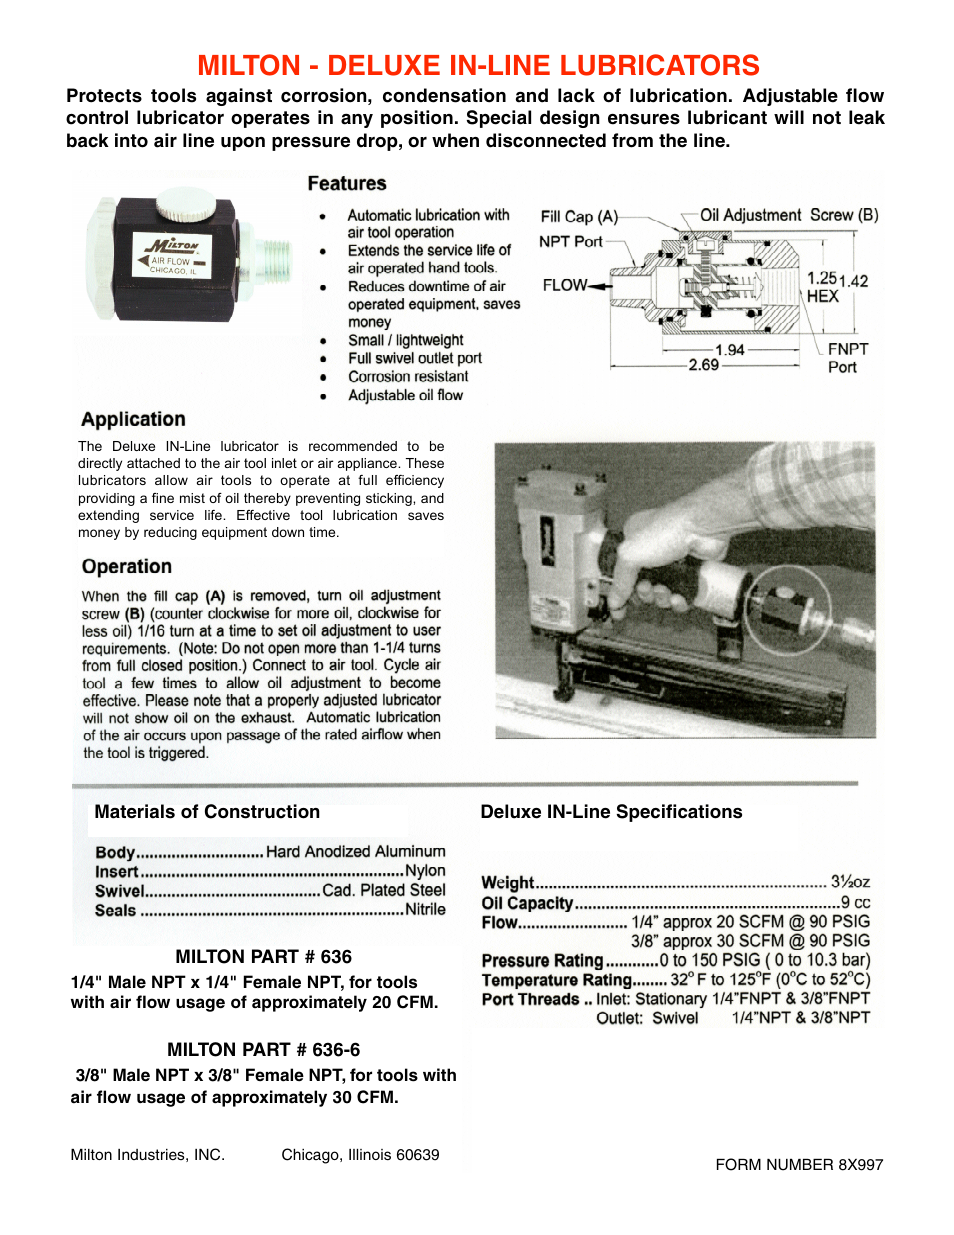 Lubricators Deluxe IN-Line 636, 636-6 - Form 8X997